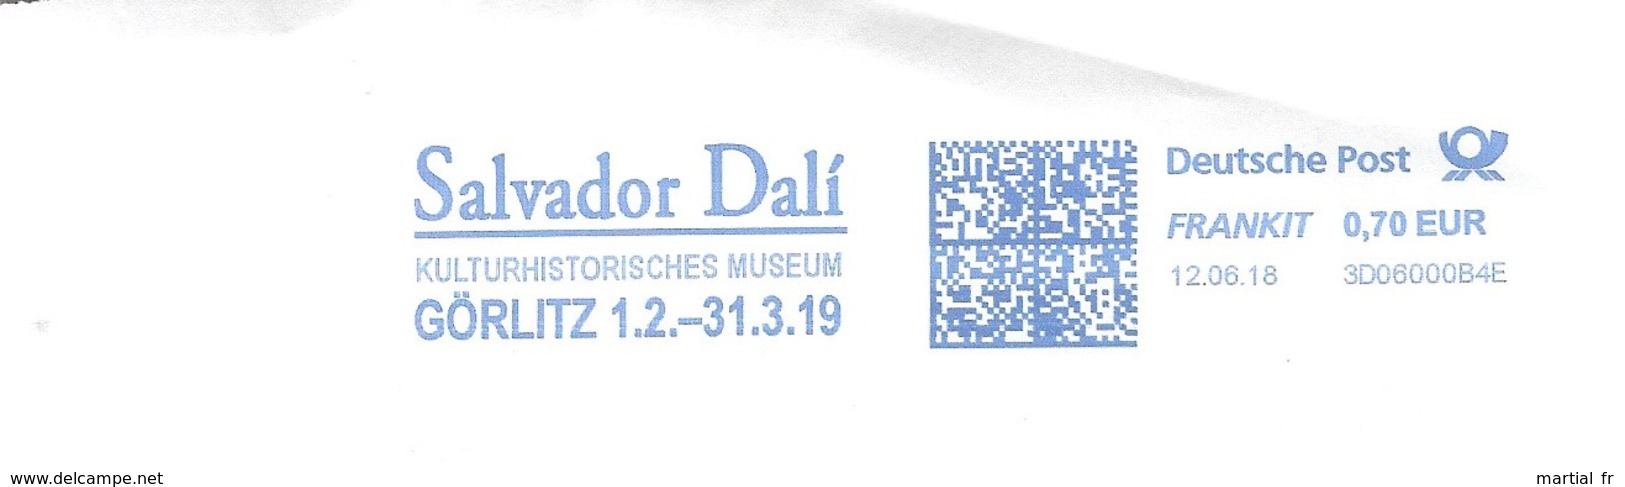 EMA ALLEMAGNE DEUTSCHLAND Peintre Art Kunst SALVADOR DALI GORLITZ KULTUR HISTORISCH MUSEUM MUSEE CULTURE HISTOIRE - Modern